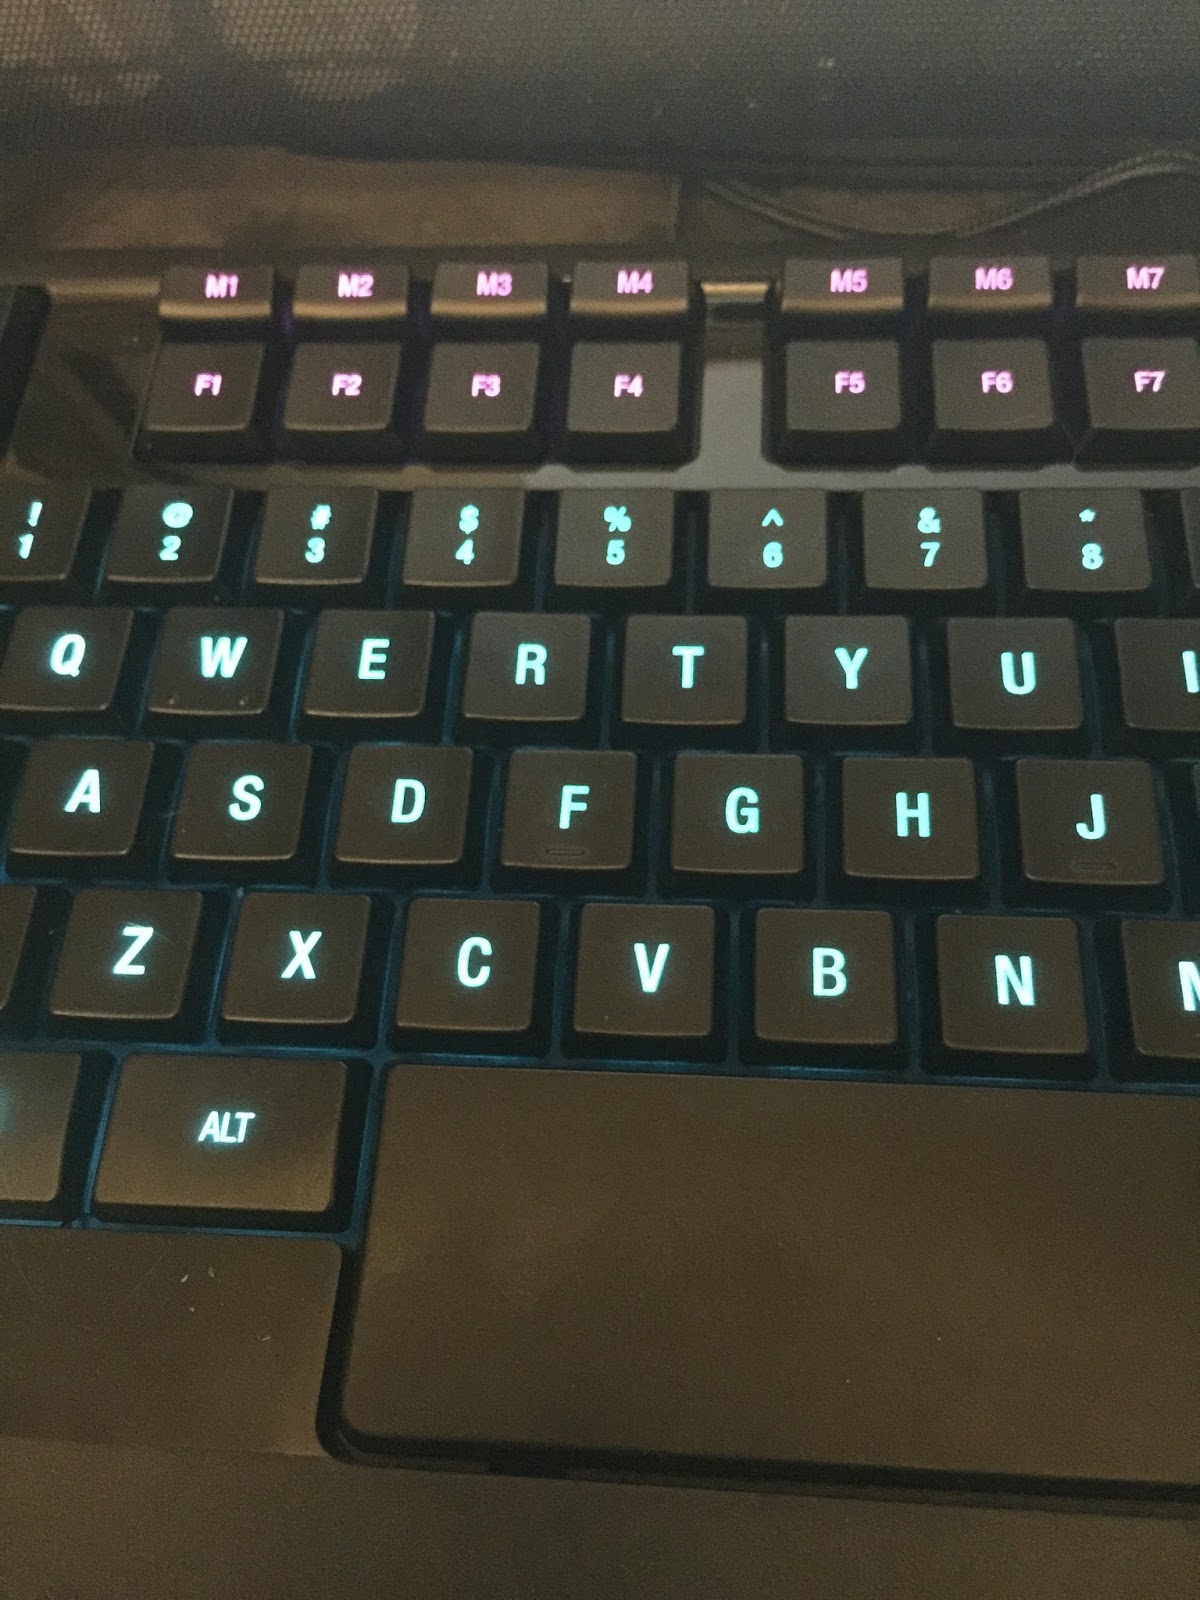 Apex Gaming Keyboard from Steel Series